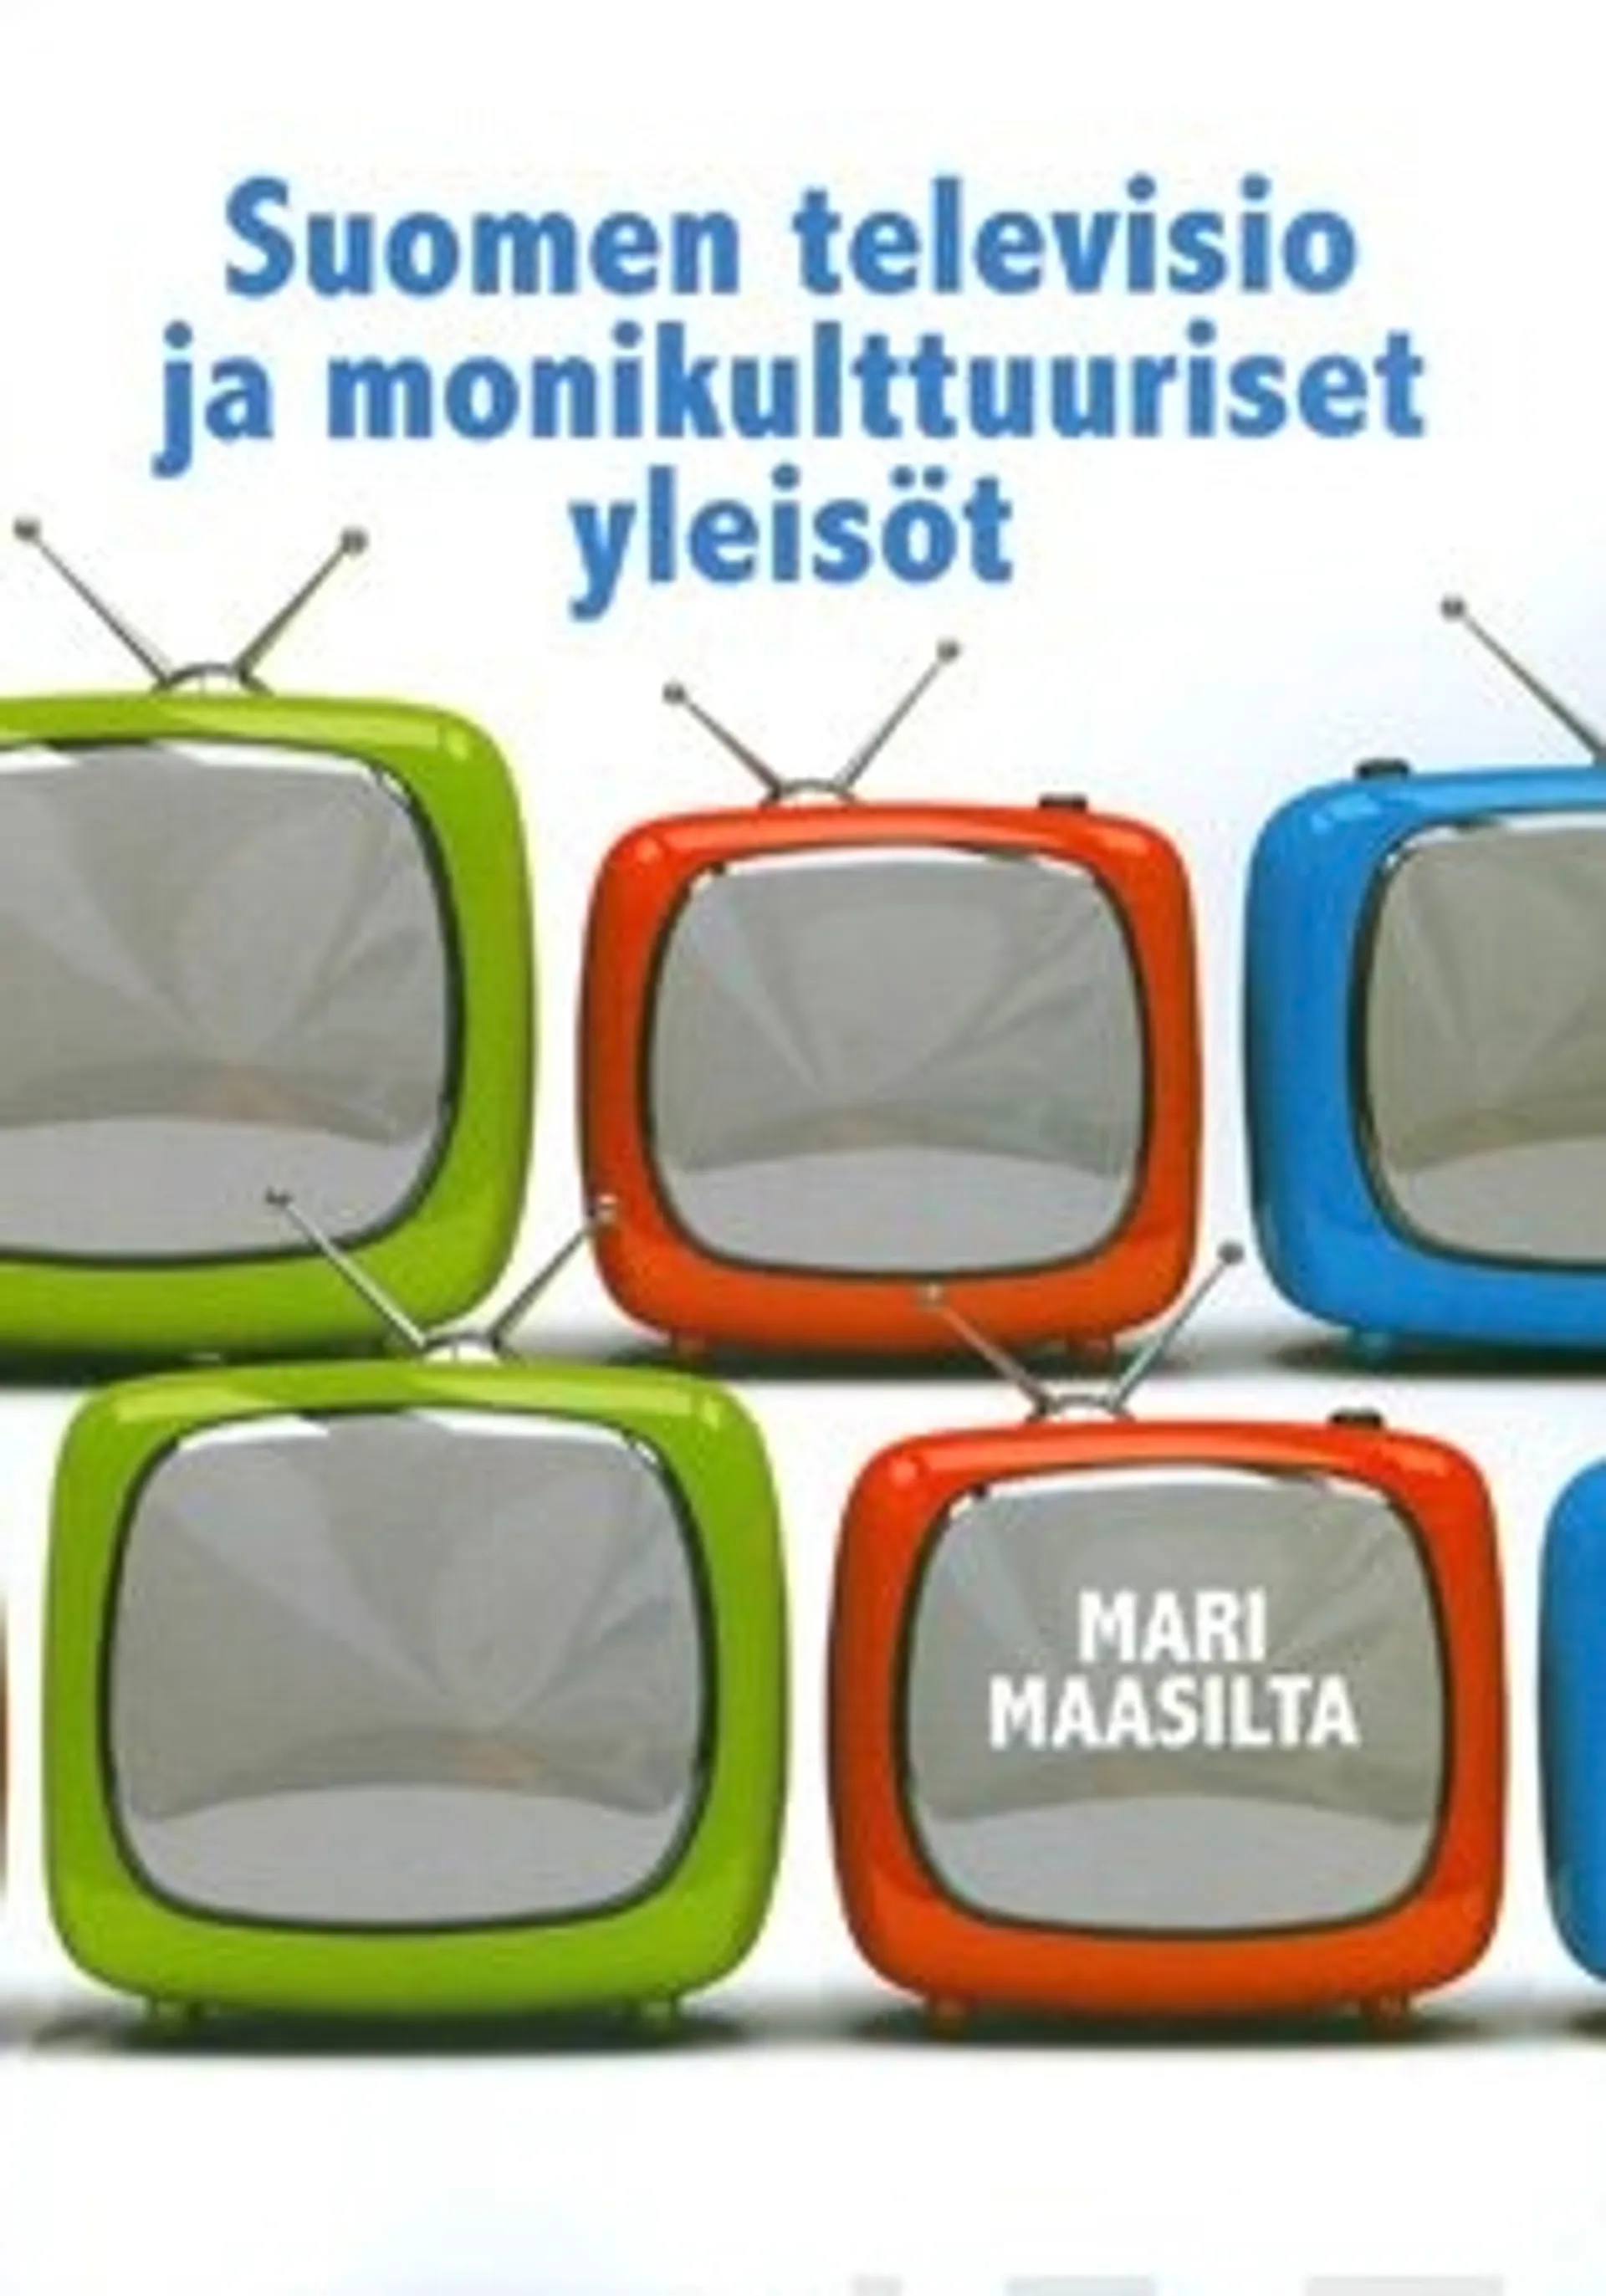 Suomen televisio ja monikulttuuriset yleisöt